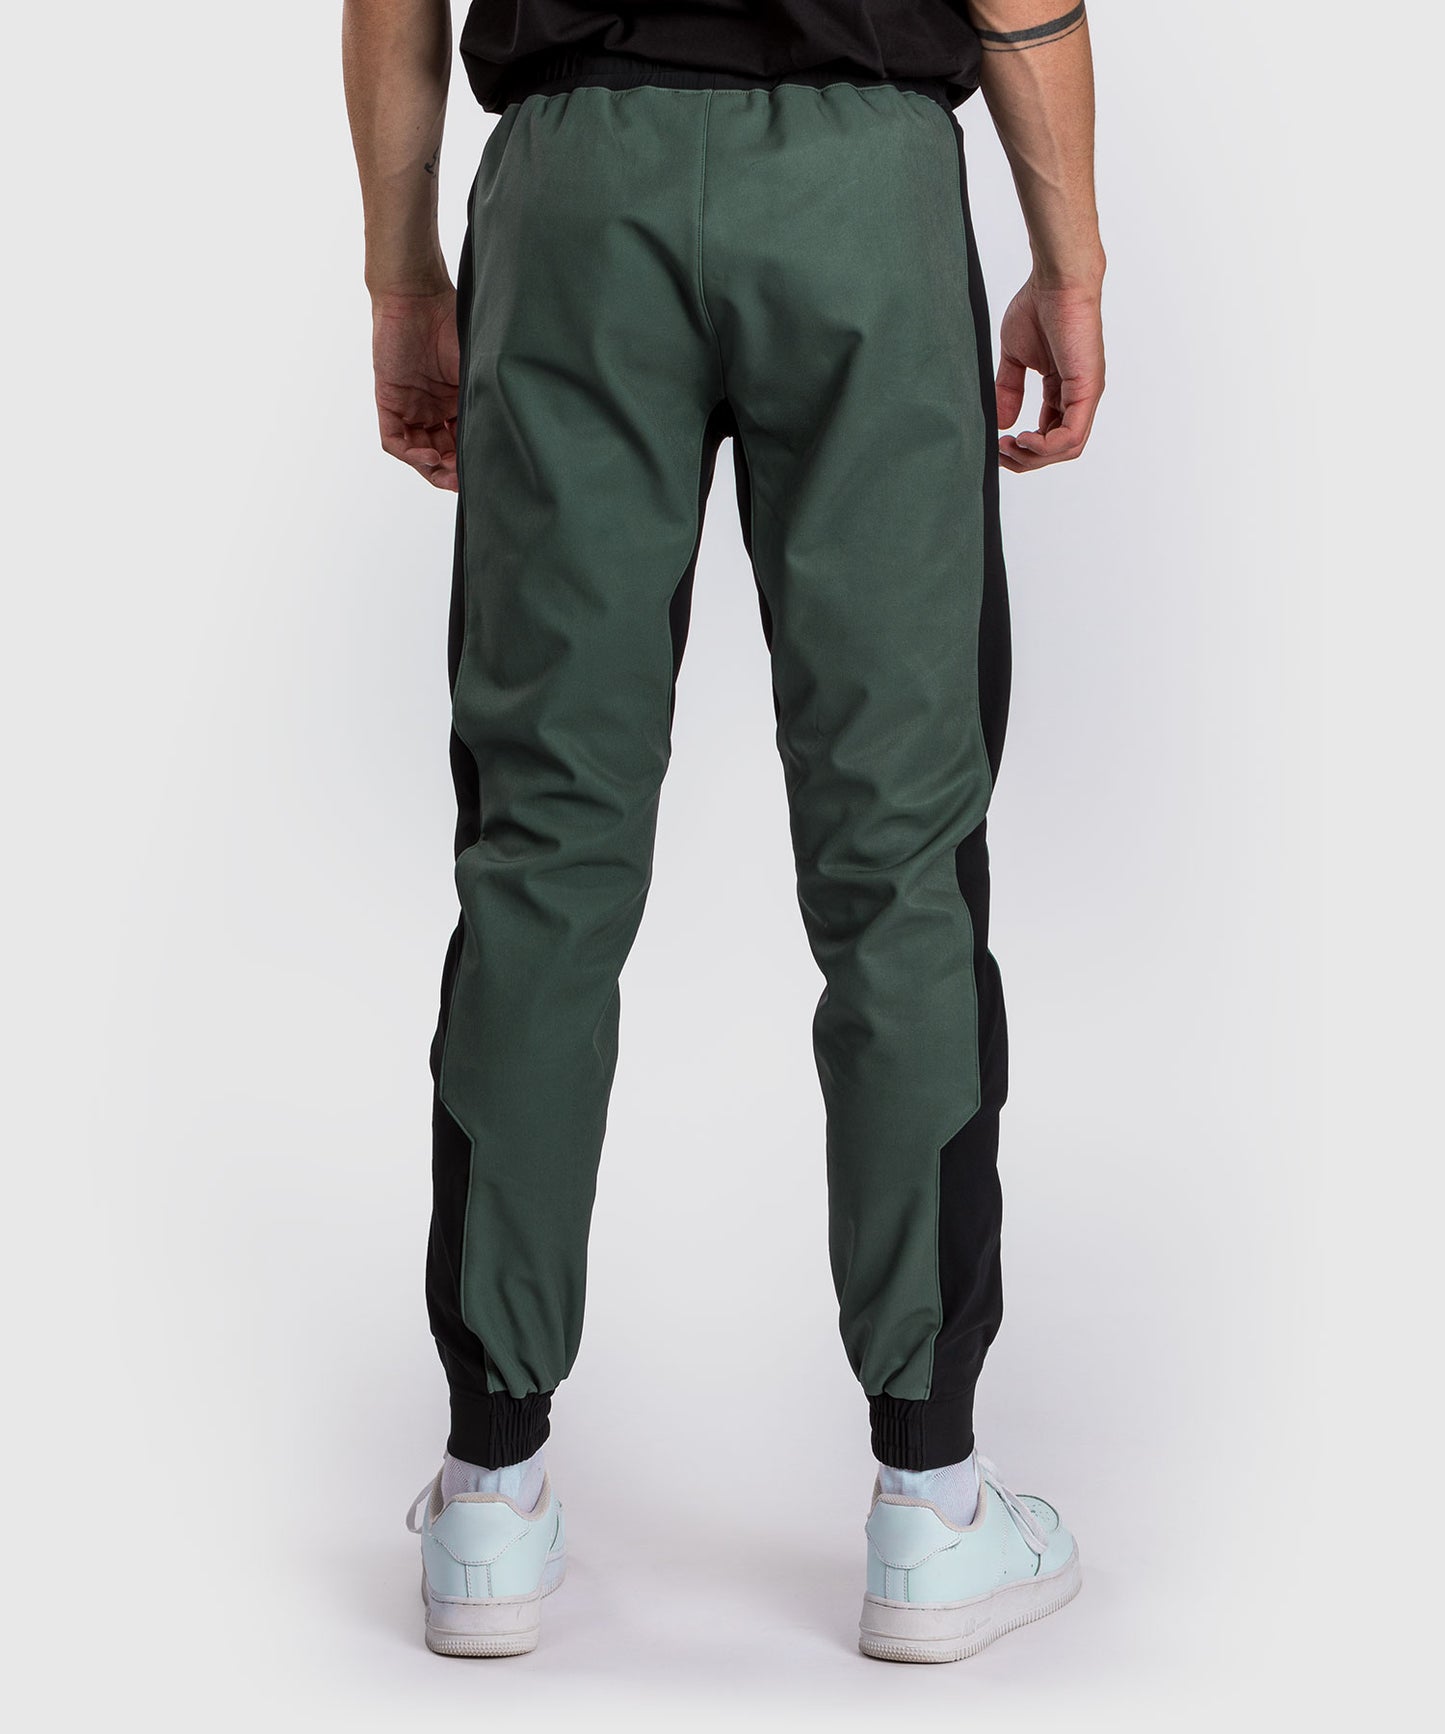 Pantalon de jogging Venum Laser 3.0 - Noir/Kaki